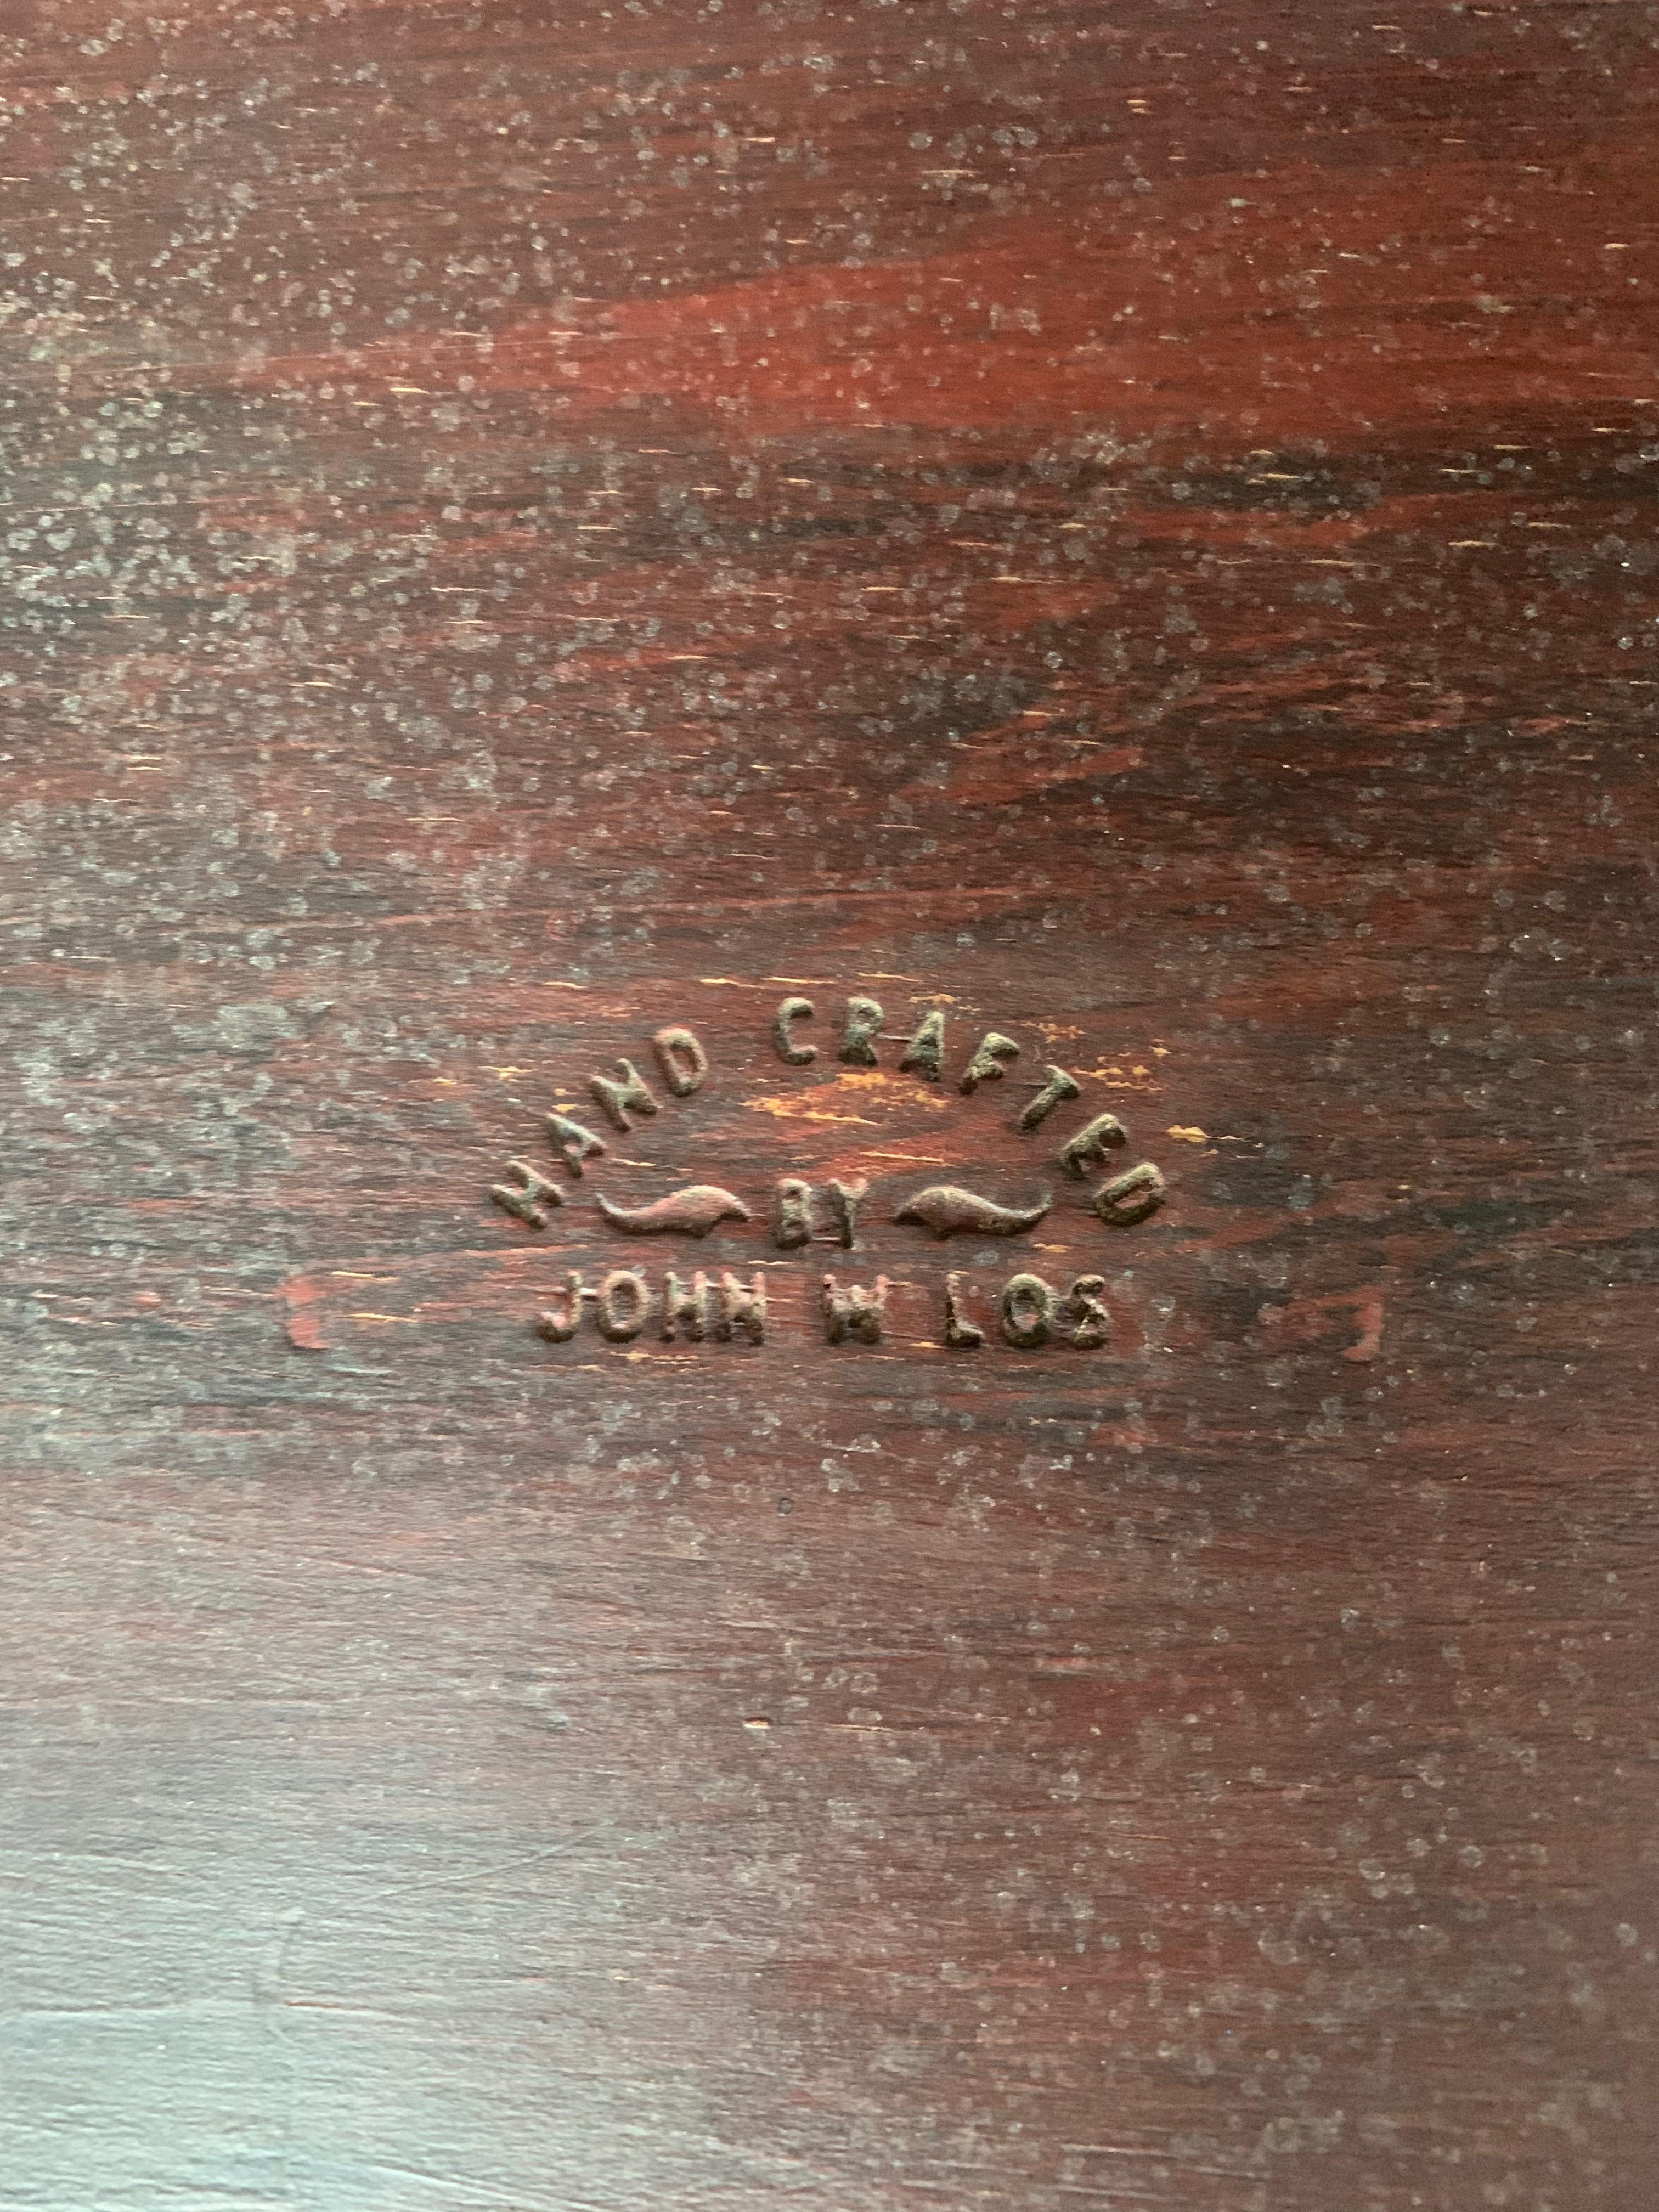 American Craftsman Tabouret à trois pieds du menuisier du Studio Woodworker John W Los en vente